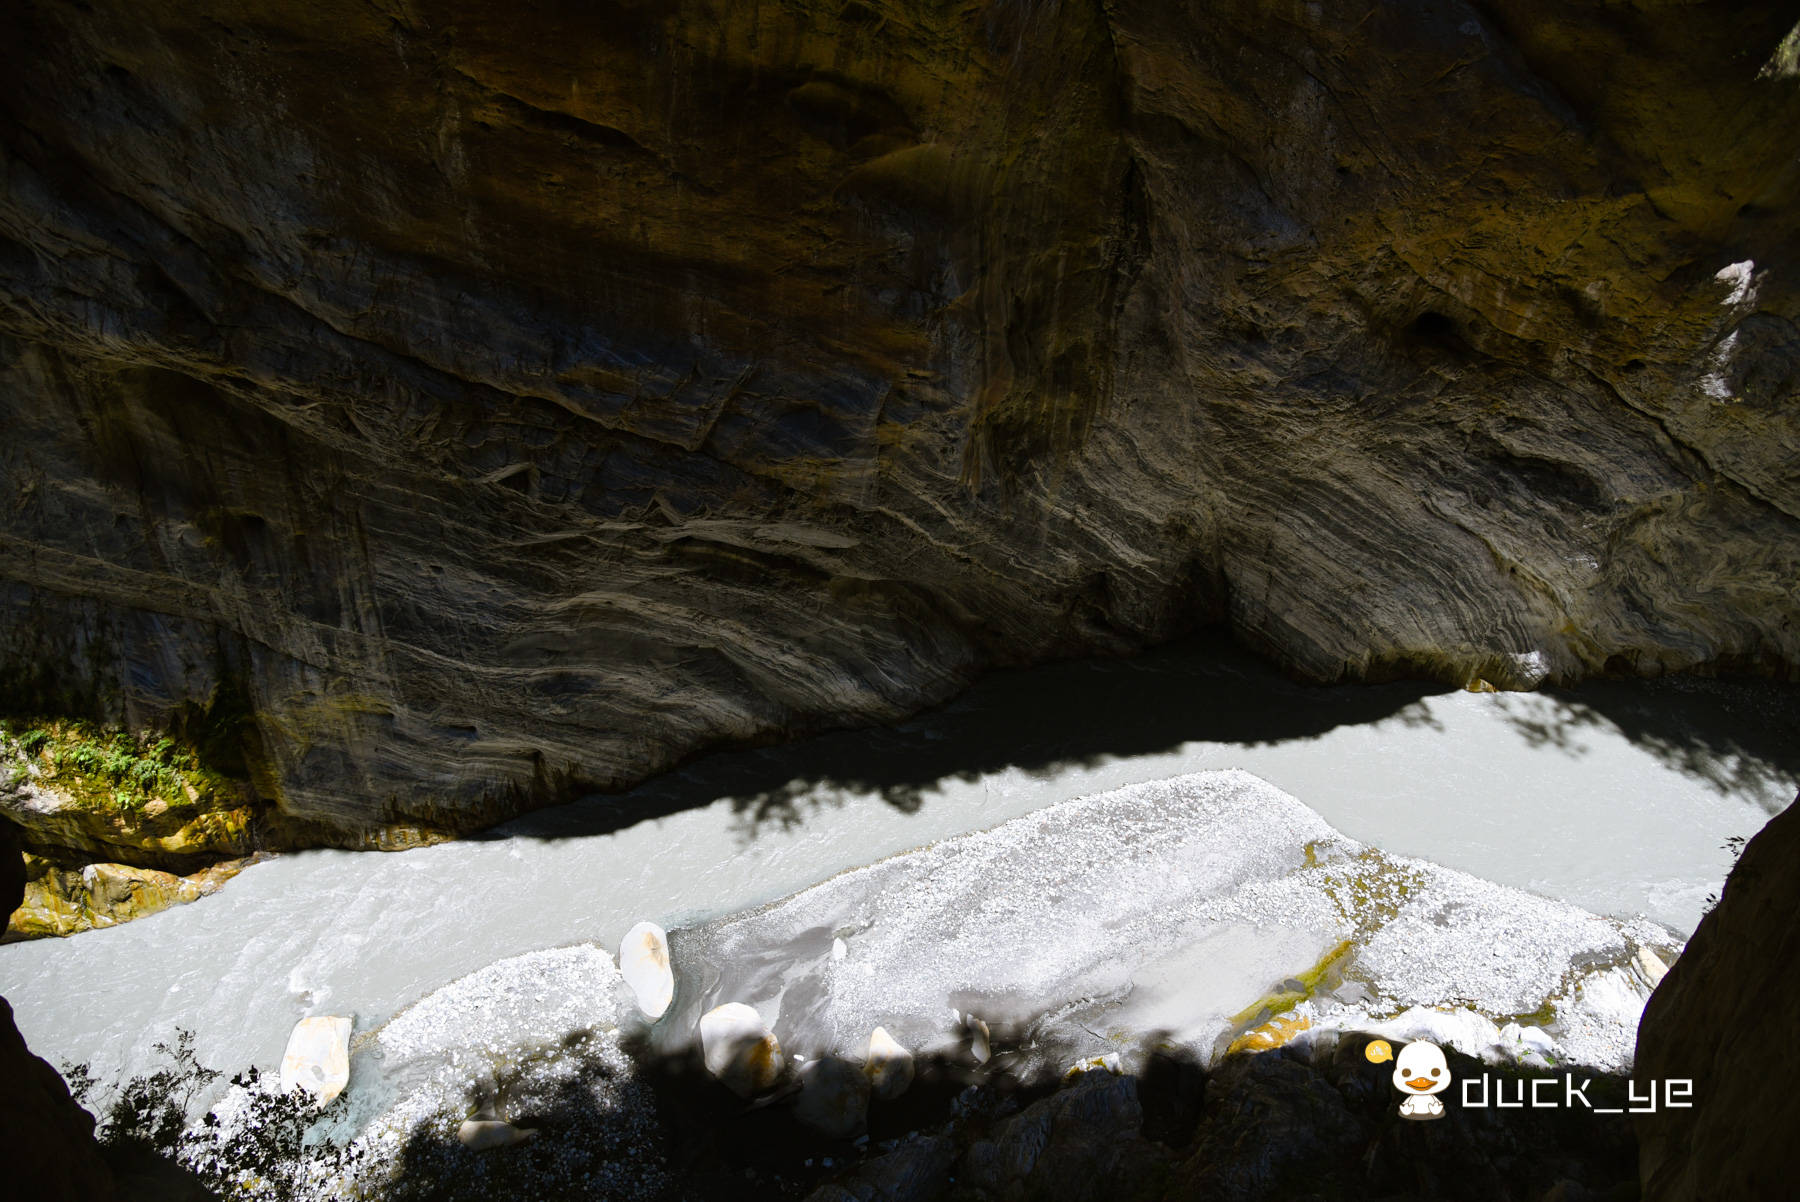 燕子口步行道：一面是悬崖上遍布洞穴，另一面是峡谷深峻滔滔流经